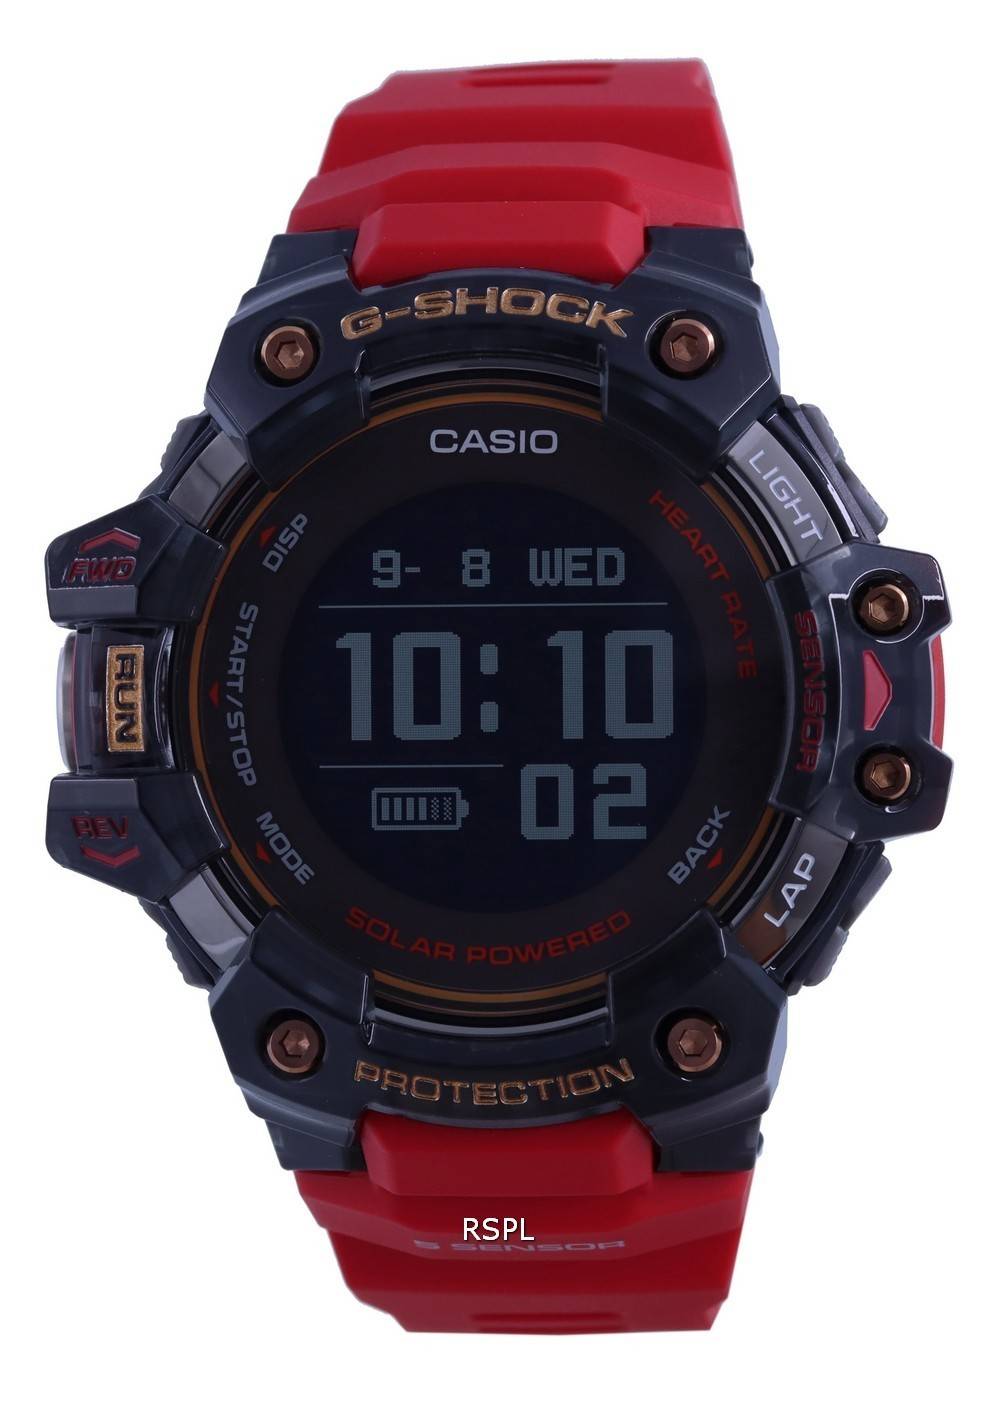 Casio G-Shock G-Move Limited Edition pulsmÃ¤tare Digital GBD-H1000-4A1 GBDH1000-4 200M Smart sportklocka